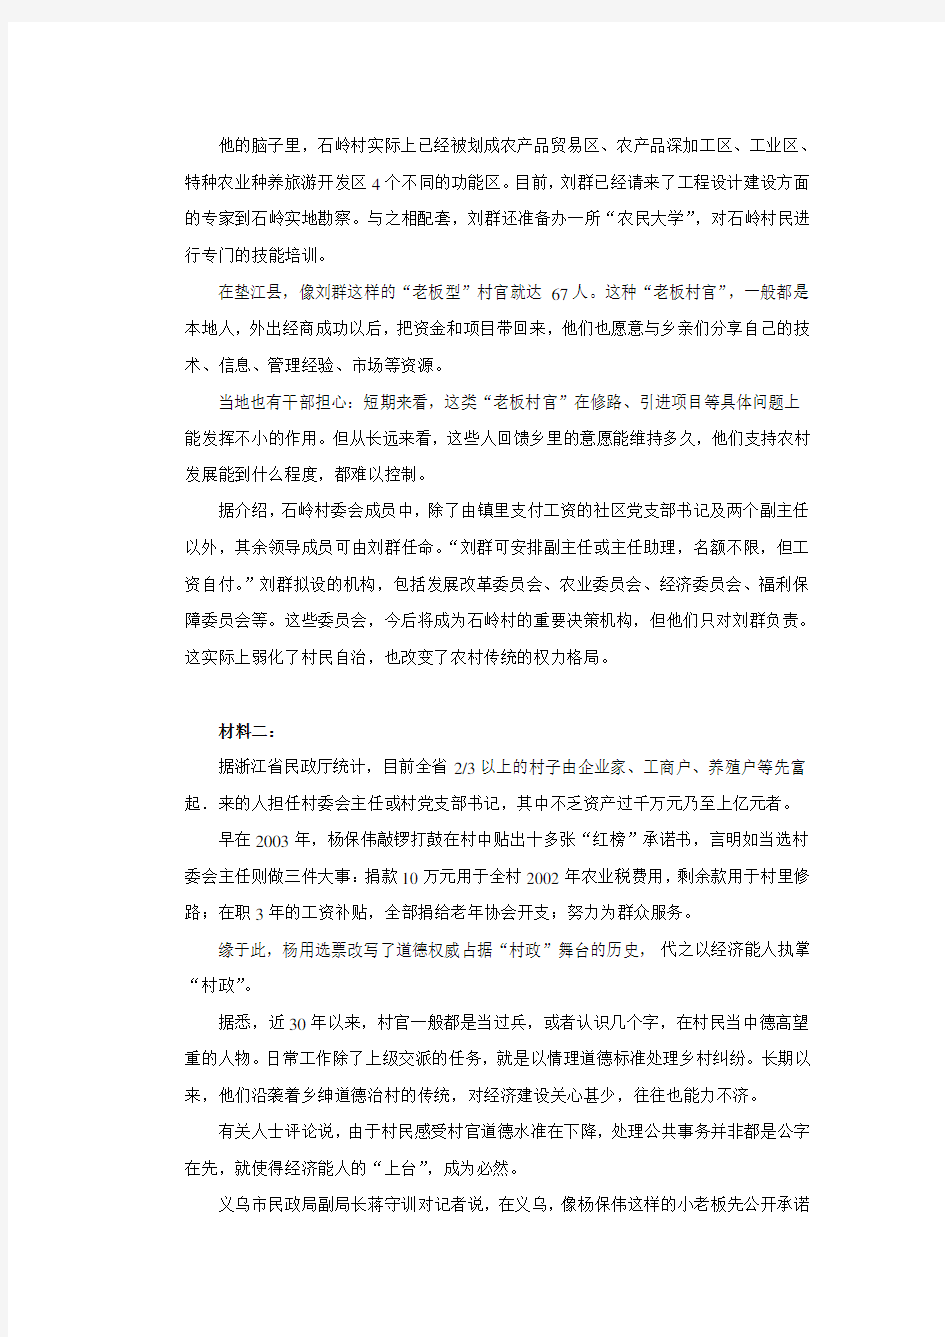 河南省2010年选调生考试《申论》真题及答案解析(最详细版)